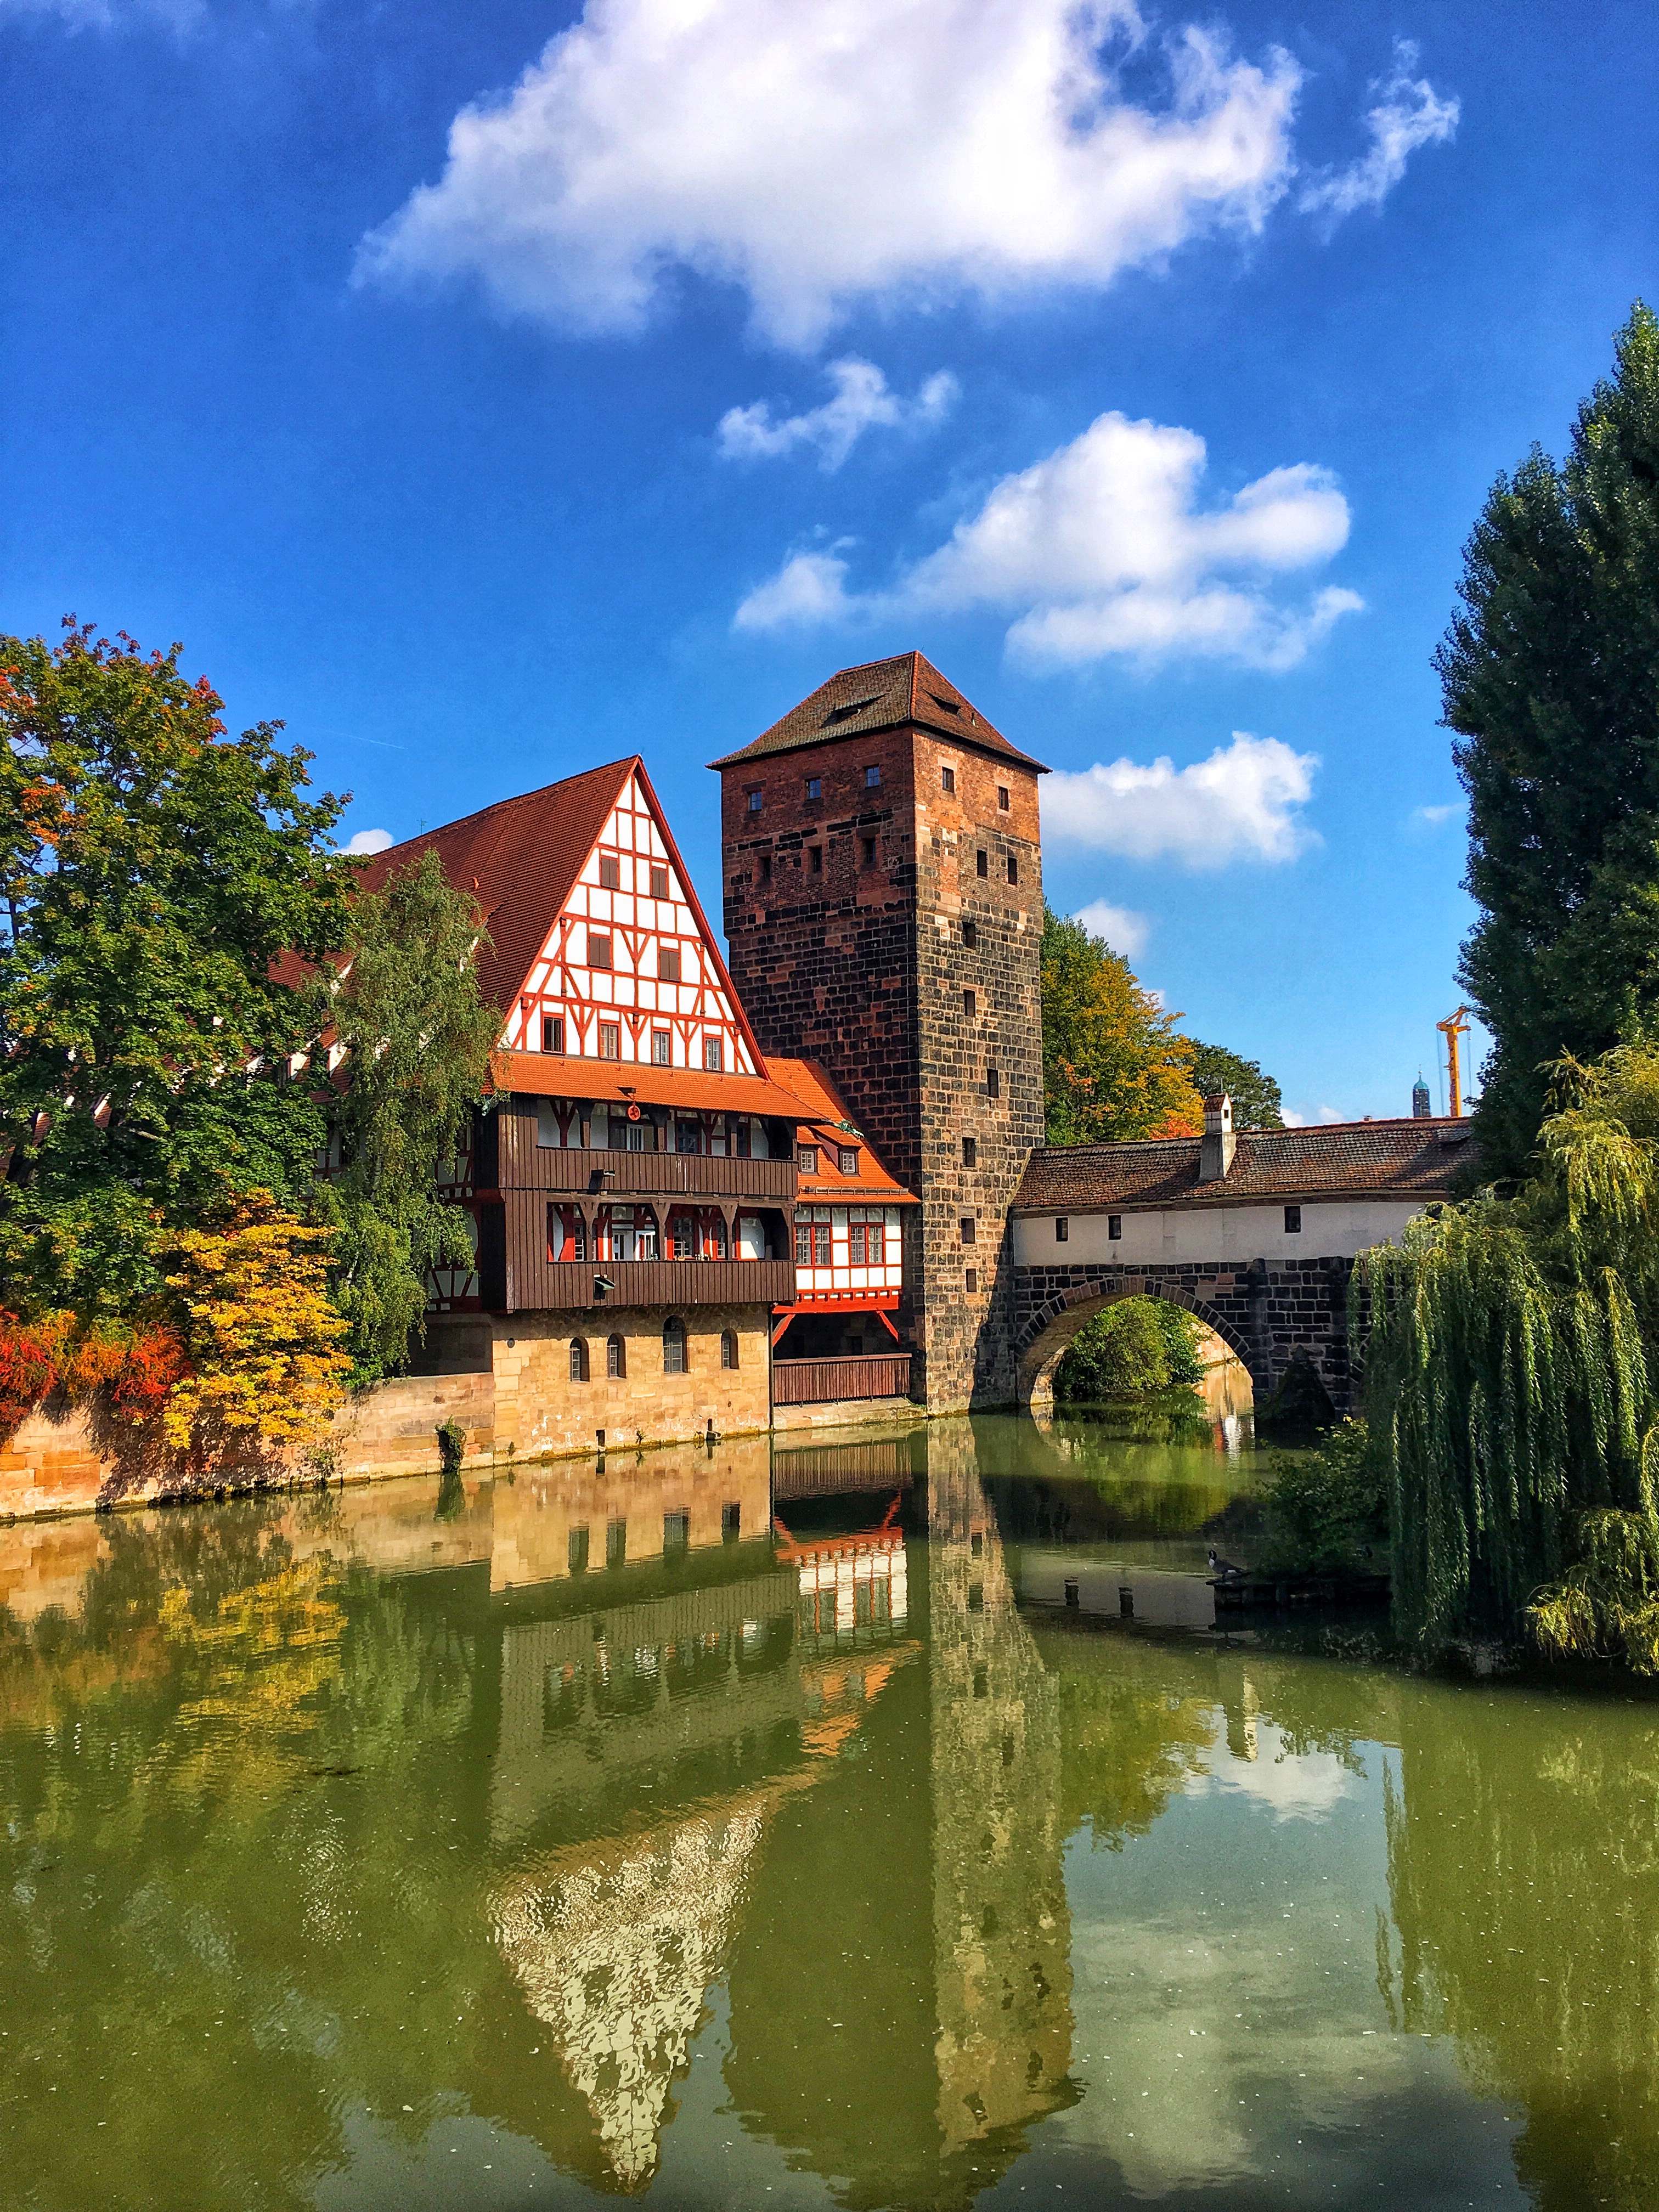 Half timbered buildings in Nuremberg Germany